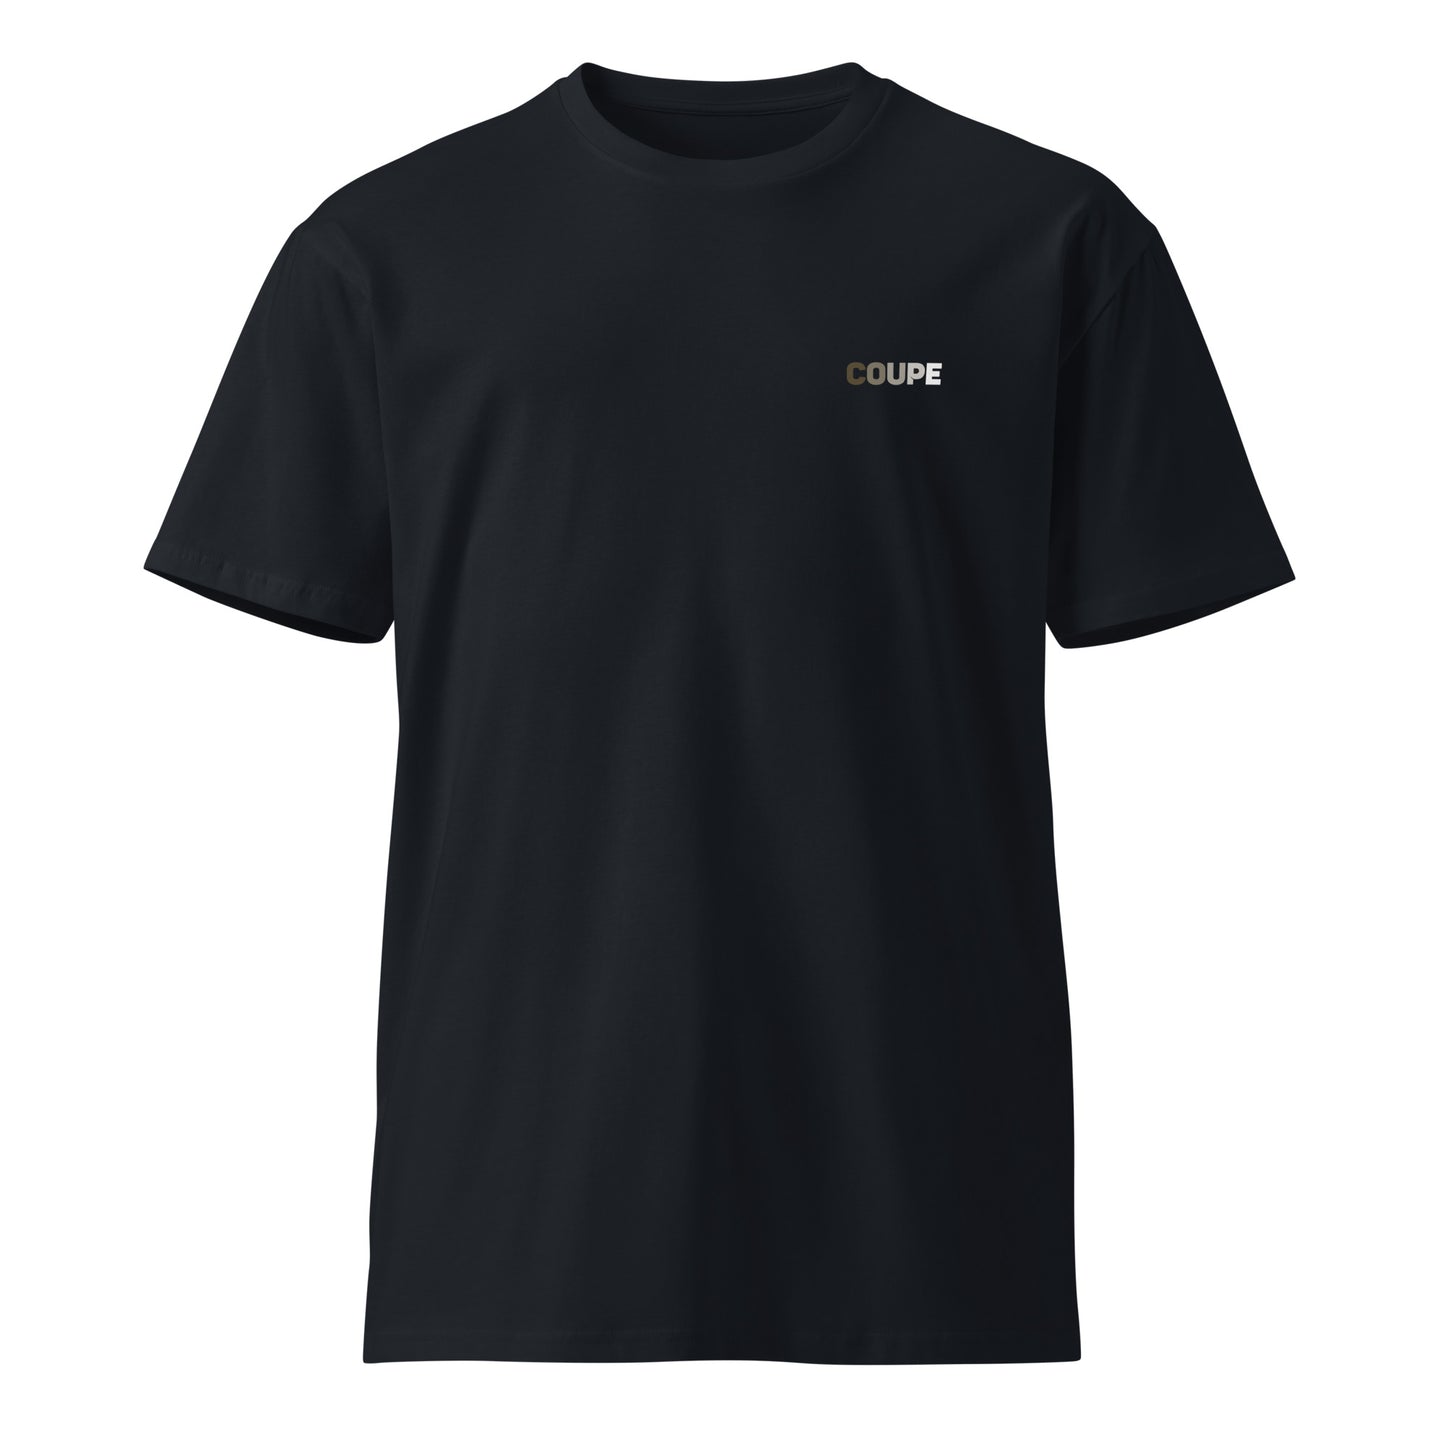 Unisex premium t-shirt